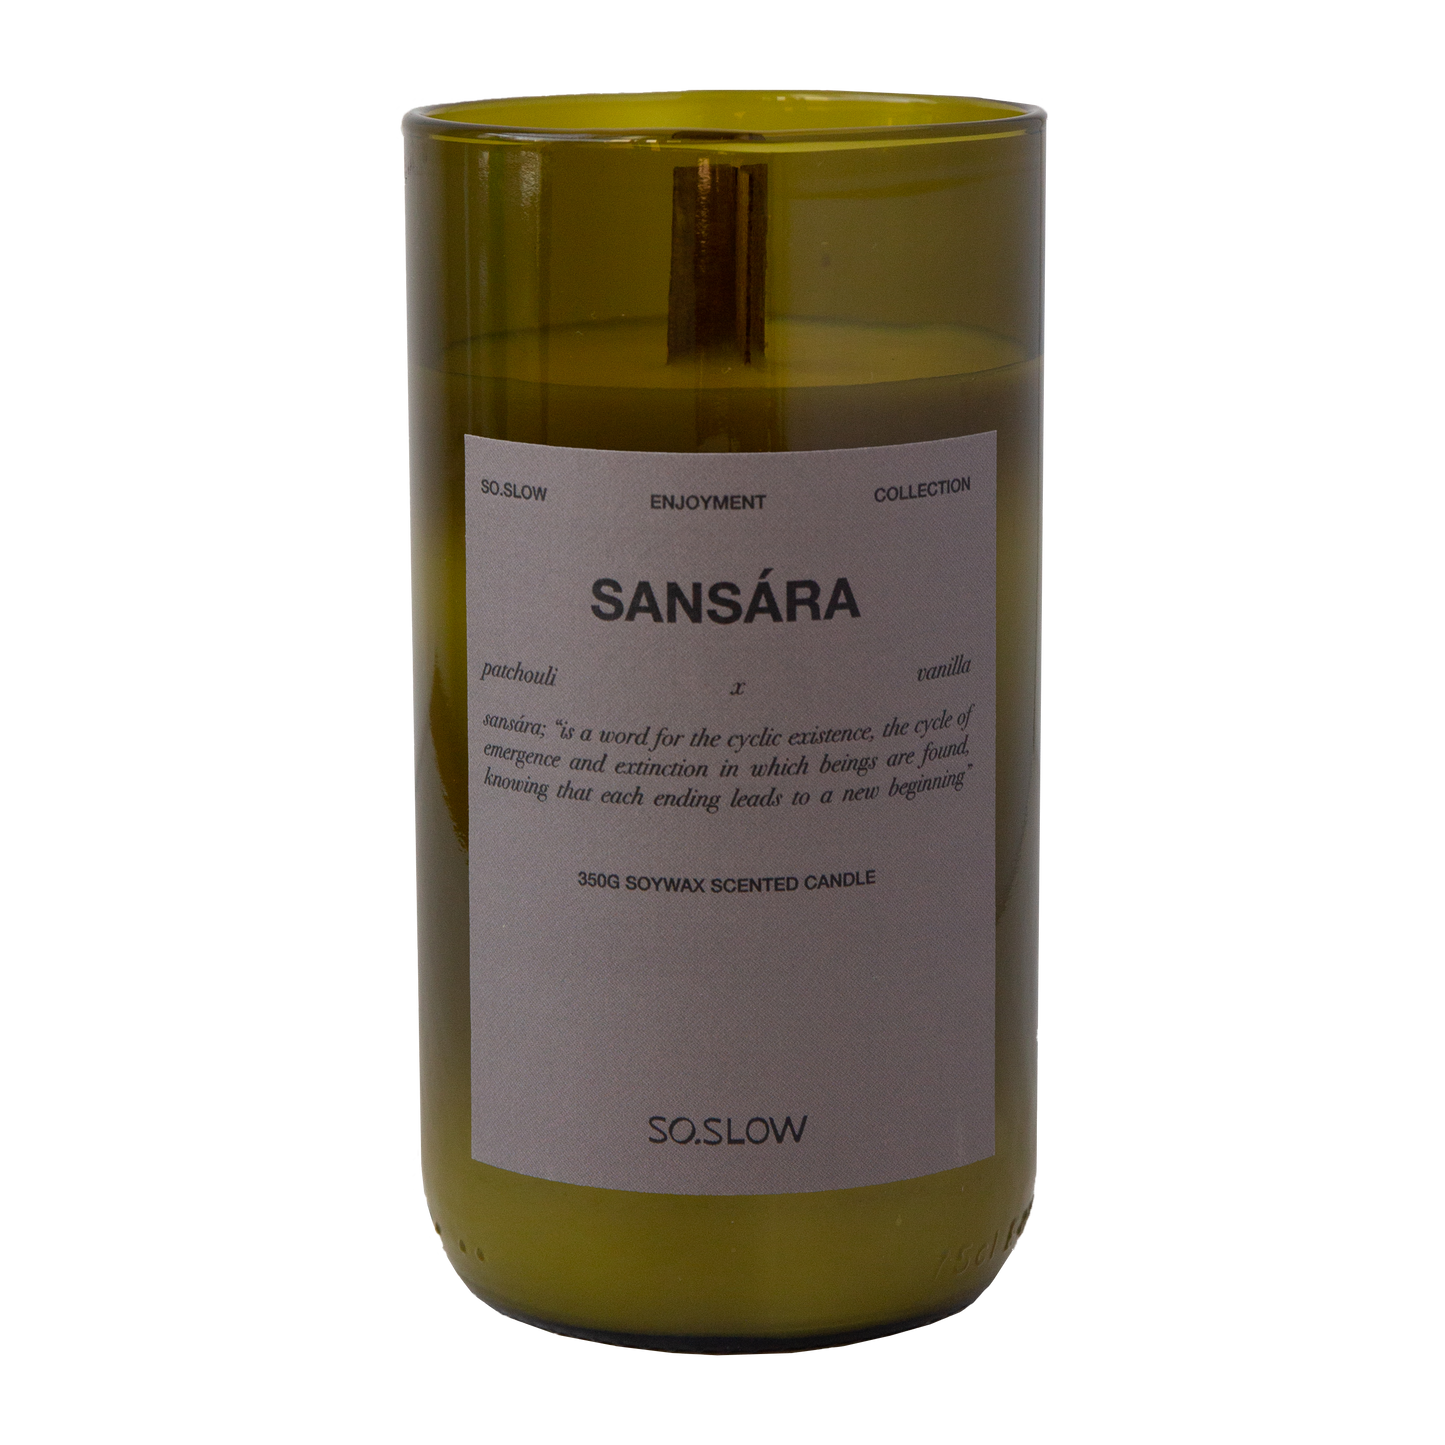 Sansara candle